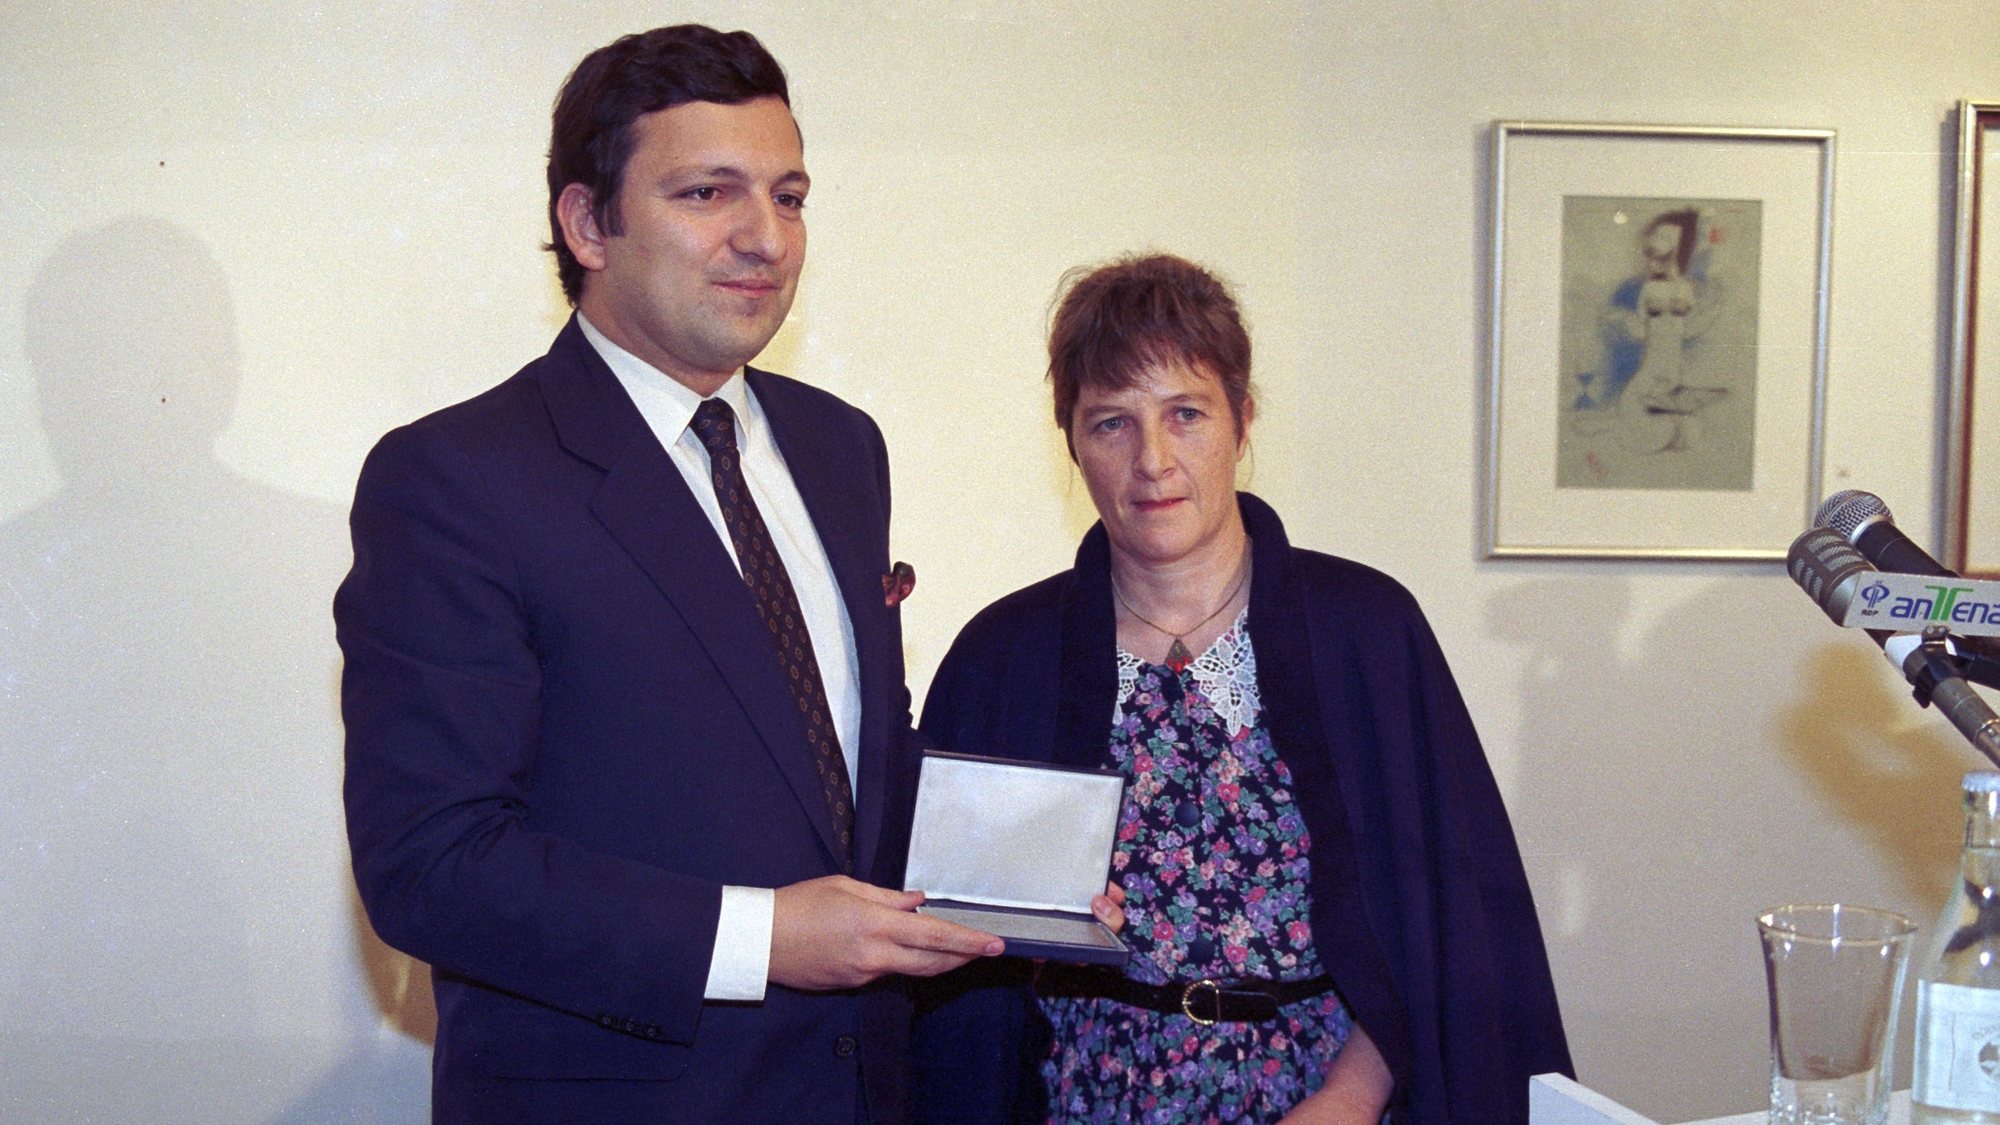 O Secretário de Estado da Cooperação, José Manuel Durão Barroso, recebe o Prémio de Personalidade do no de 1990, atribuido pela Associação de Imprensa Estrangeira entregue pela jornalista Jill Jolliffe, em Lisboa a 12 de março de 1991.

António Cotrim / Lusa